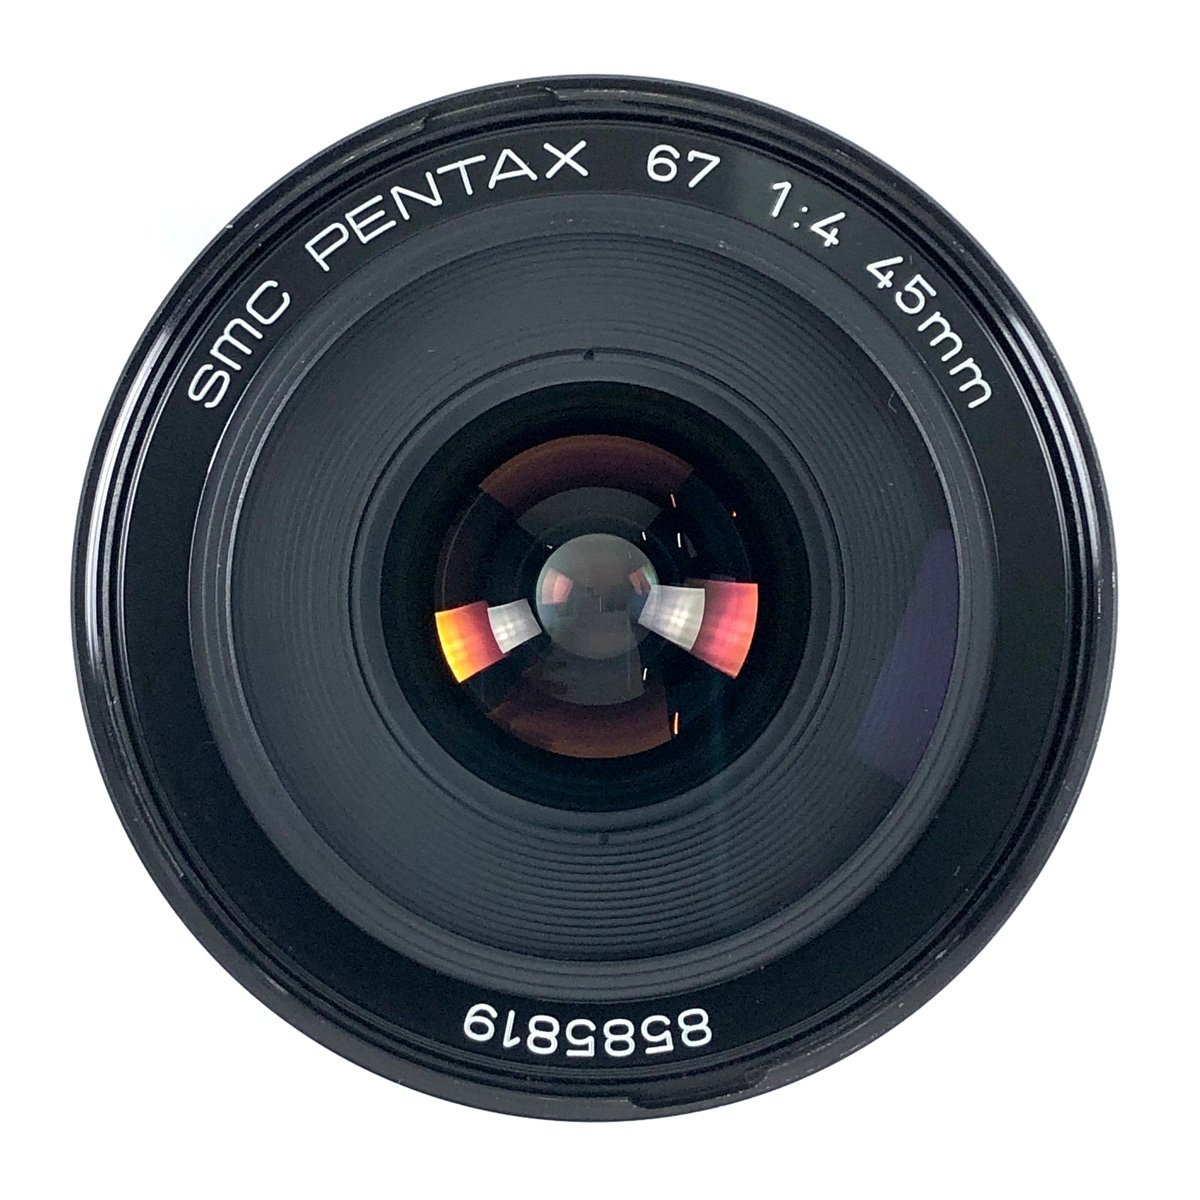 ペンタックス PENTAX SMC 67 45mm F4 6x7 バケペン用 中判カメラ用レンズ 【中古】の画像4